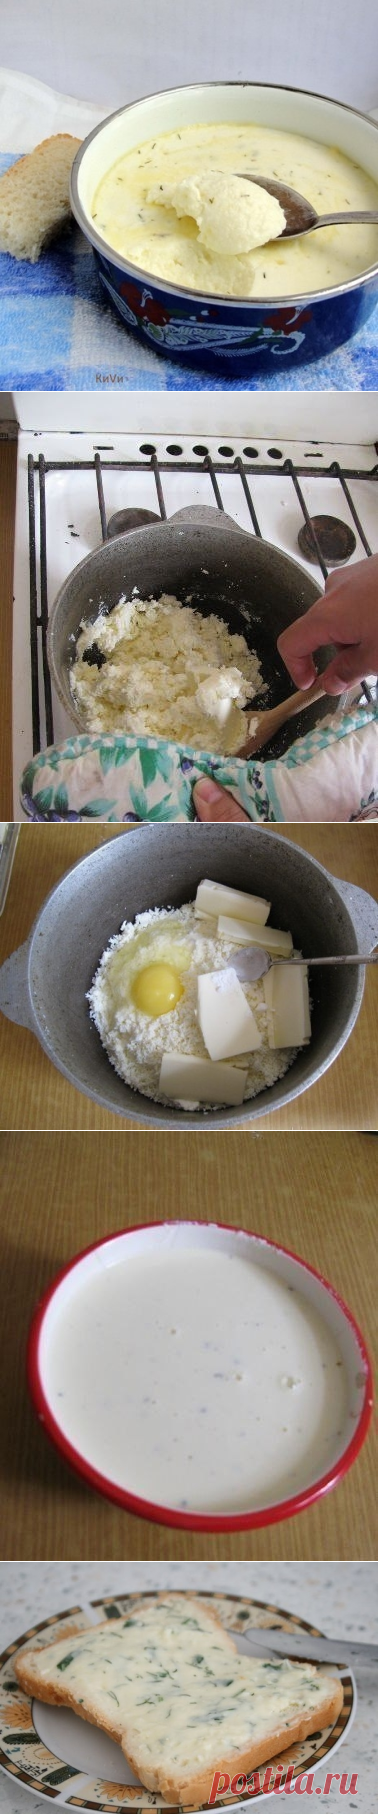 Как приготовить домашний плавленный сыр - рецепт, ингридиенты и фотографии